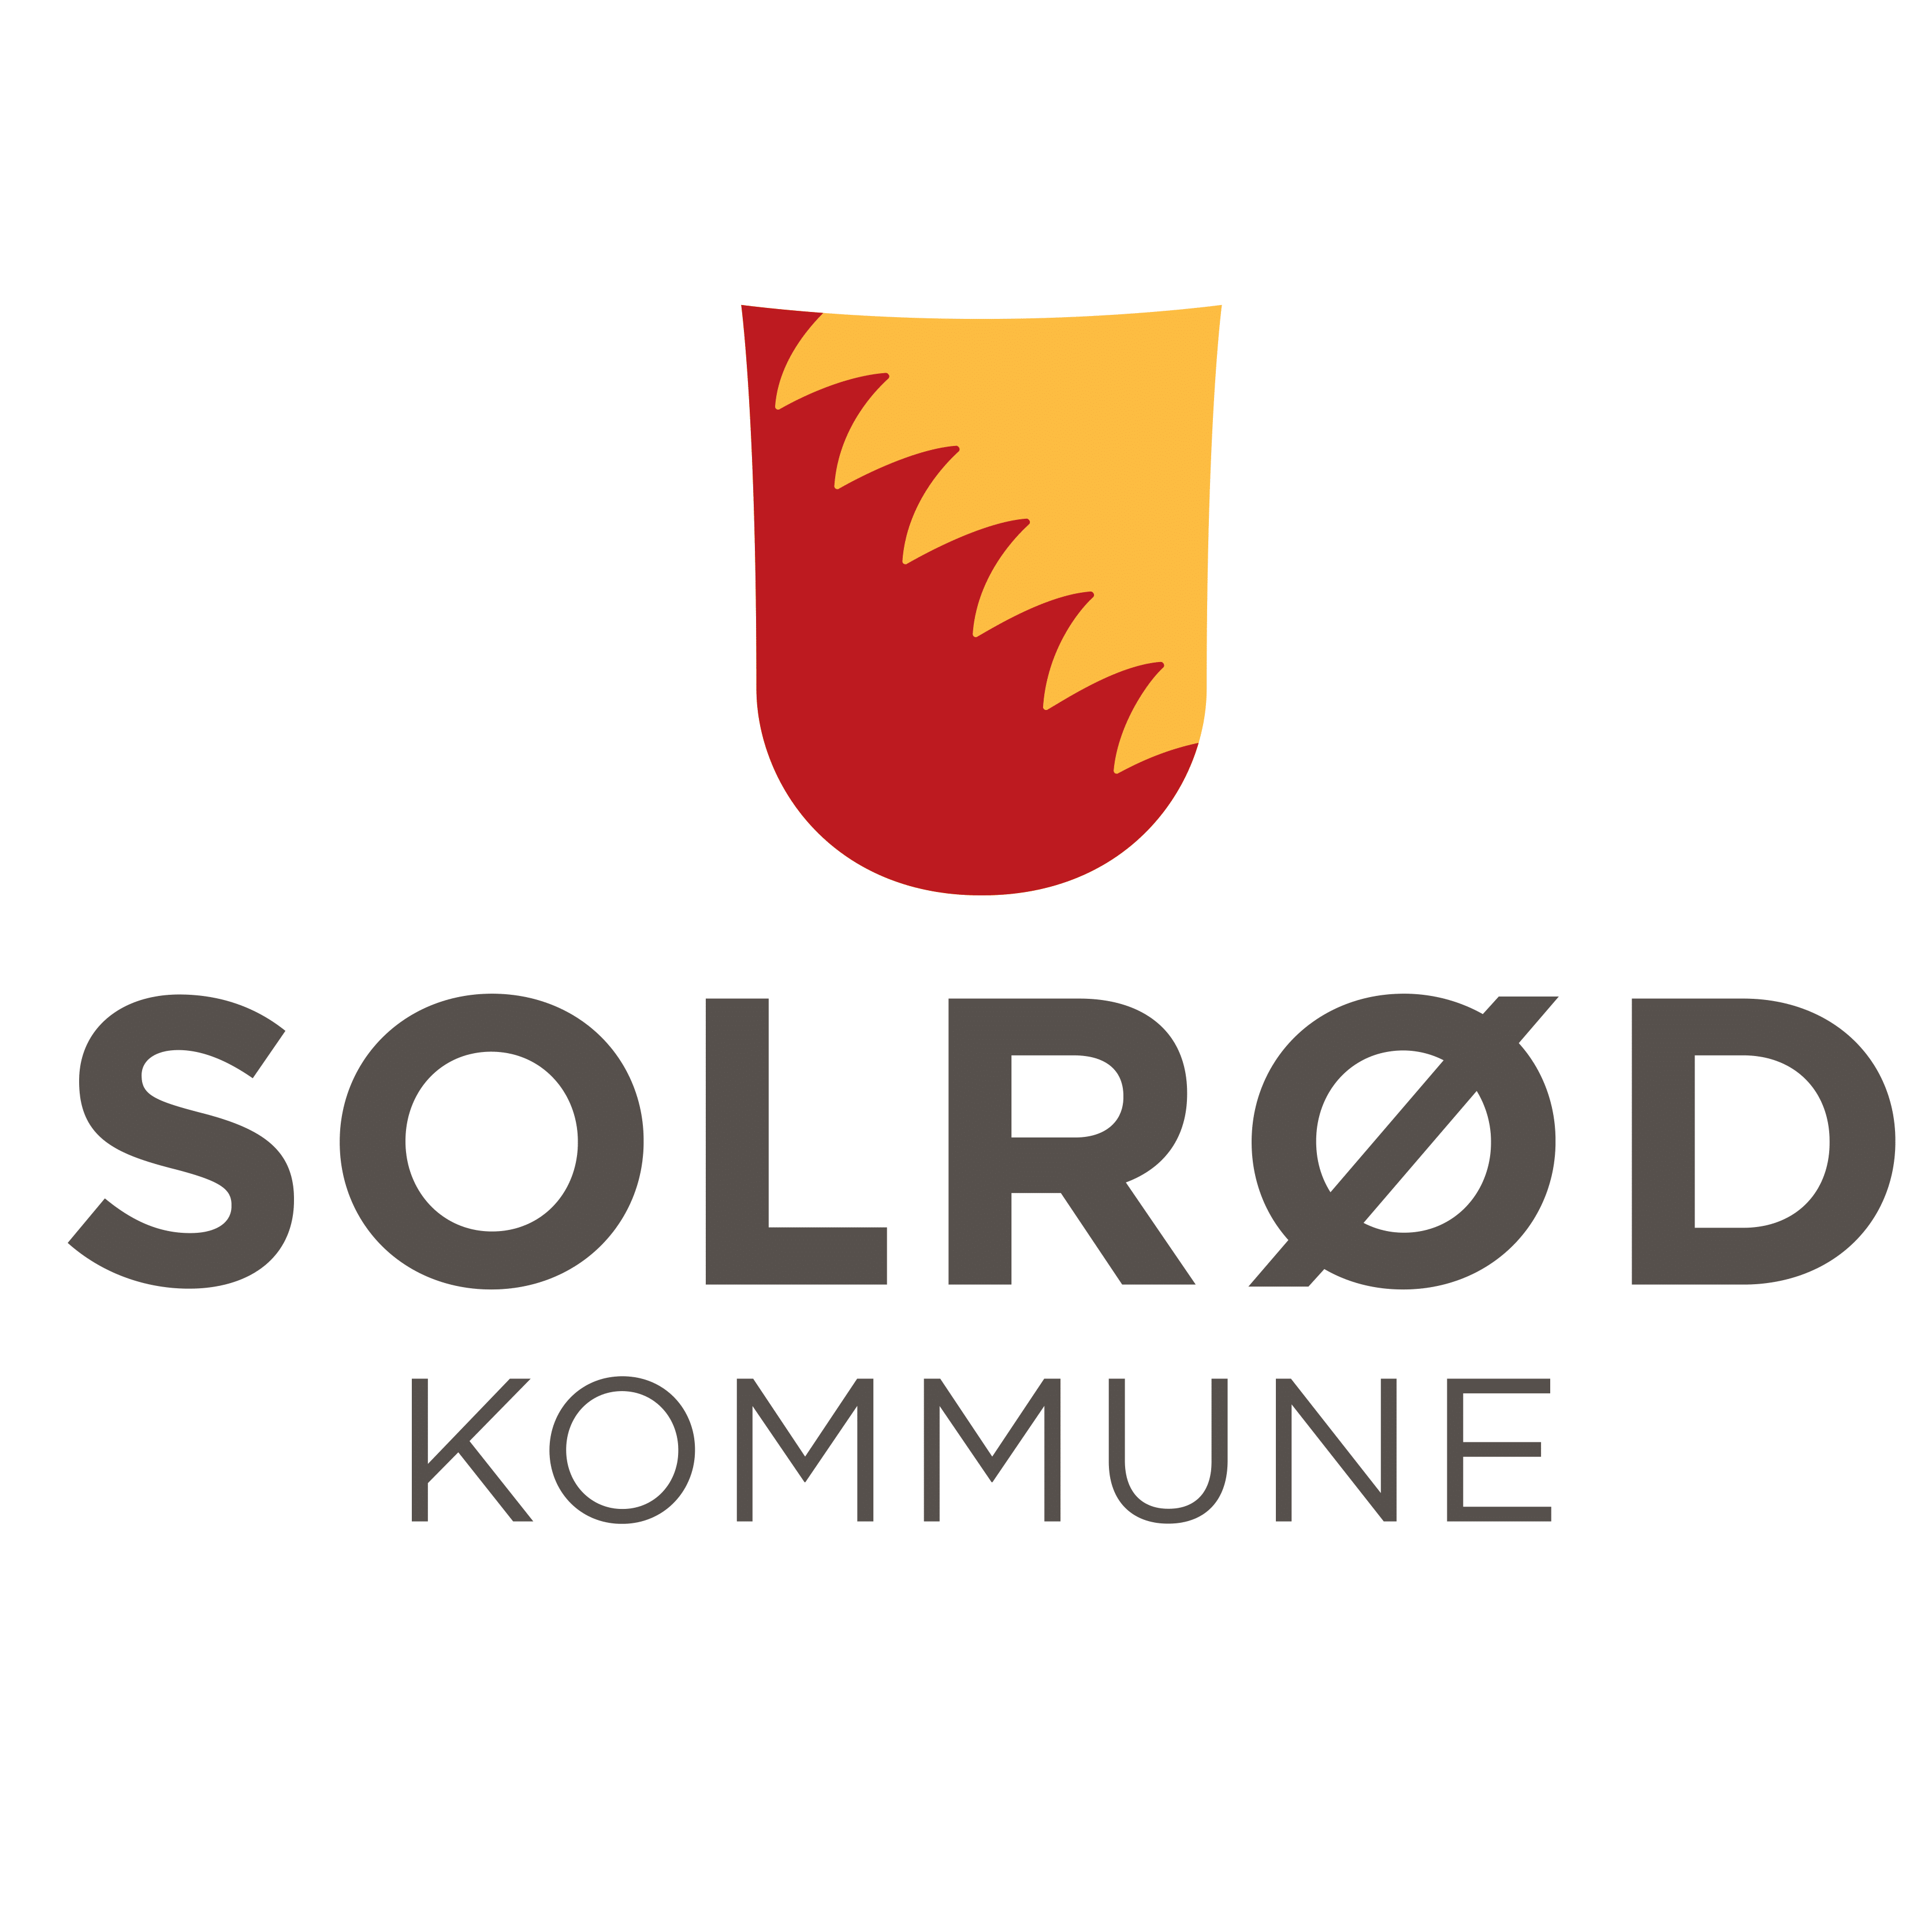 Solrød Kommune